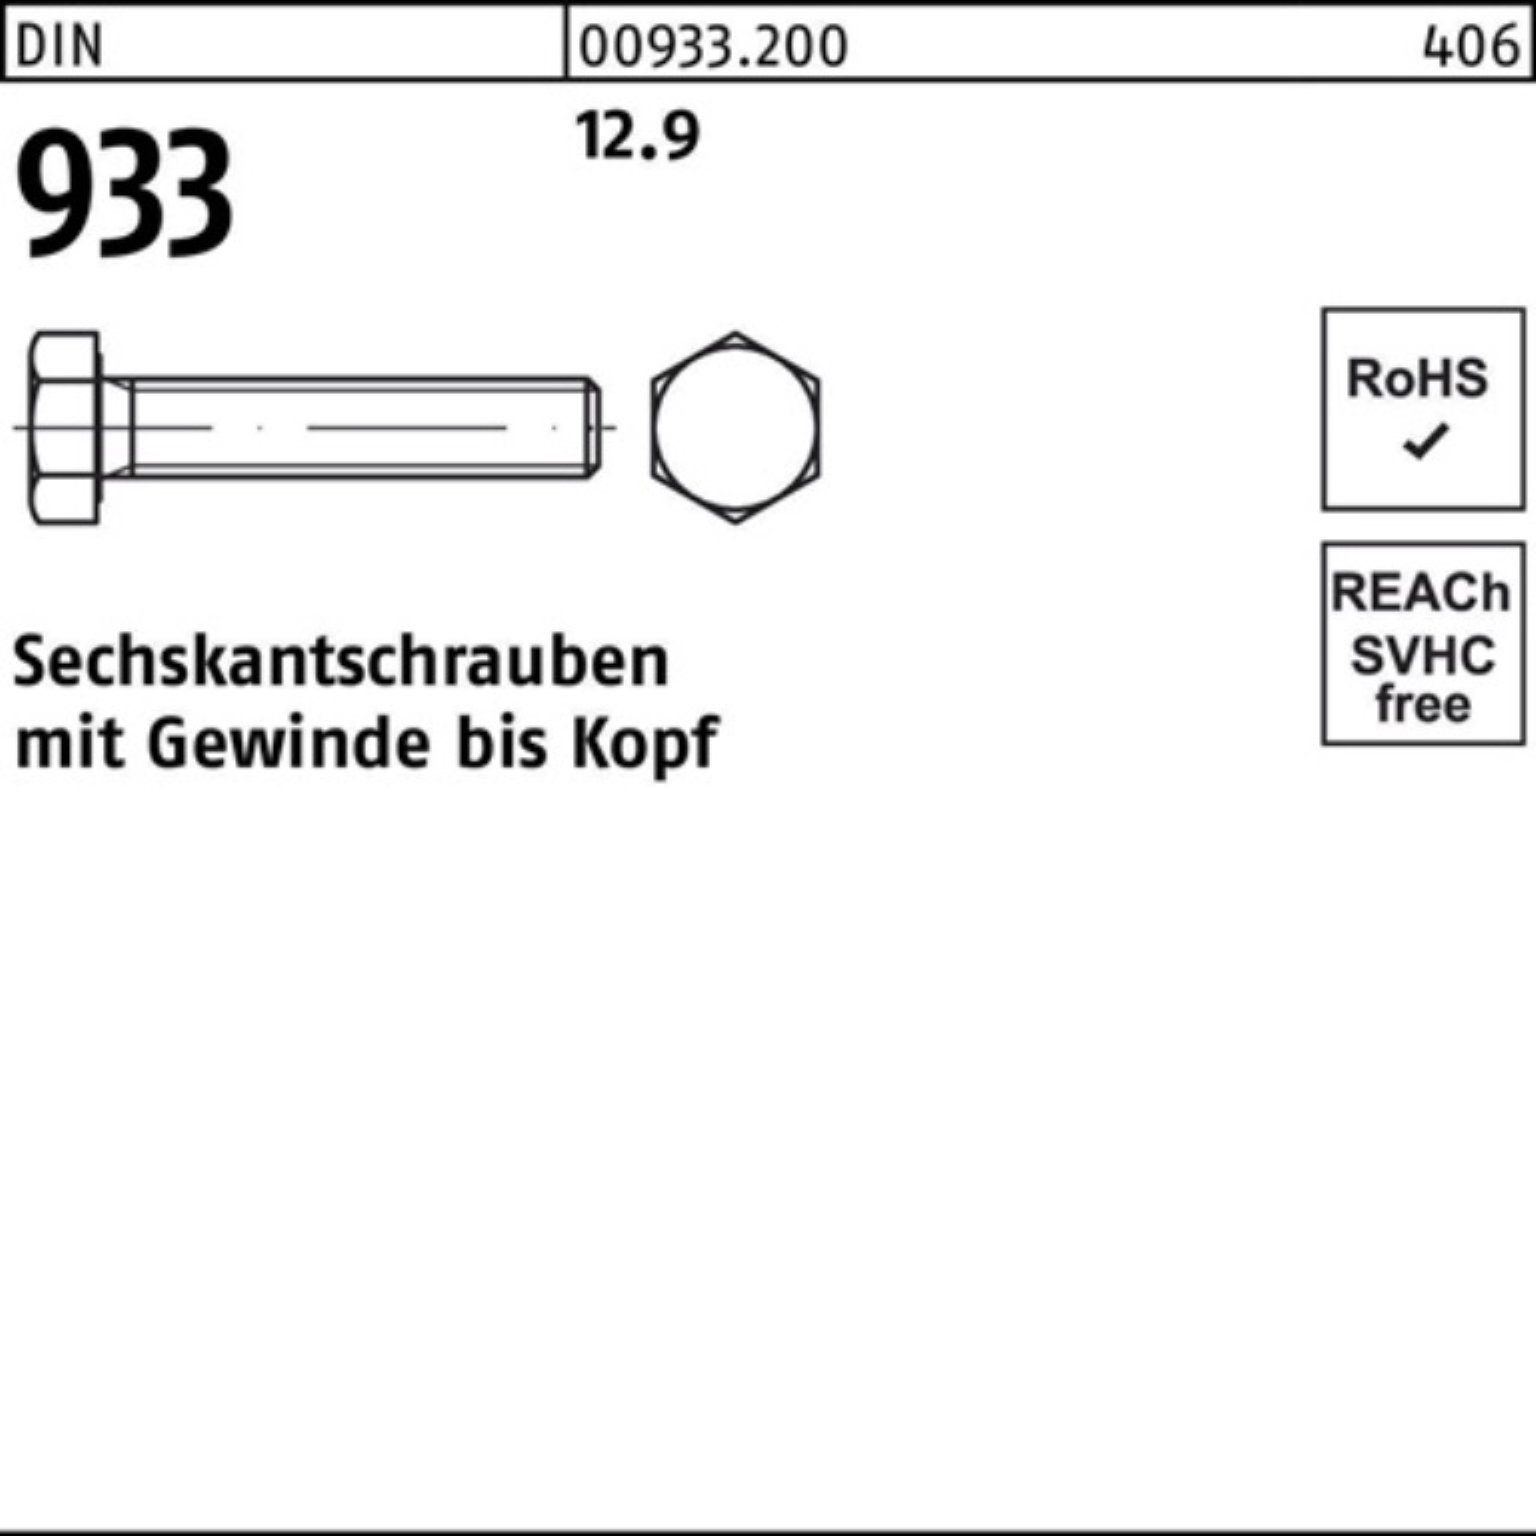 Pack 933 100er 933 Reyher Stück 12.9 VG Sechskantschraube Sechskantschraube DIN 25 70 DIN M16x